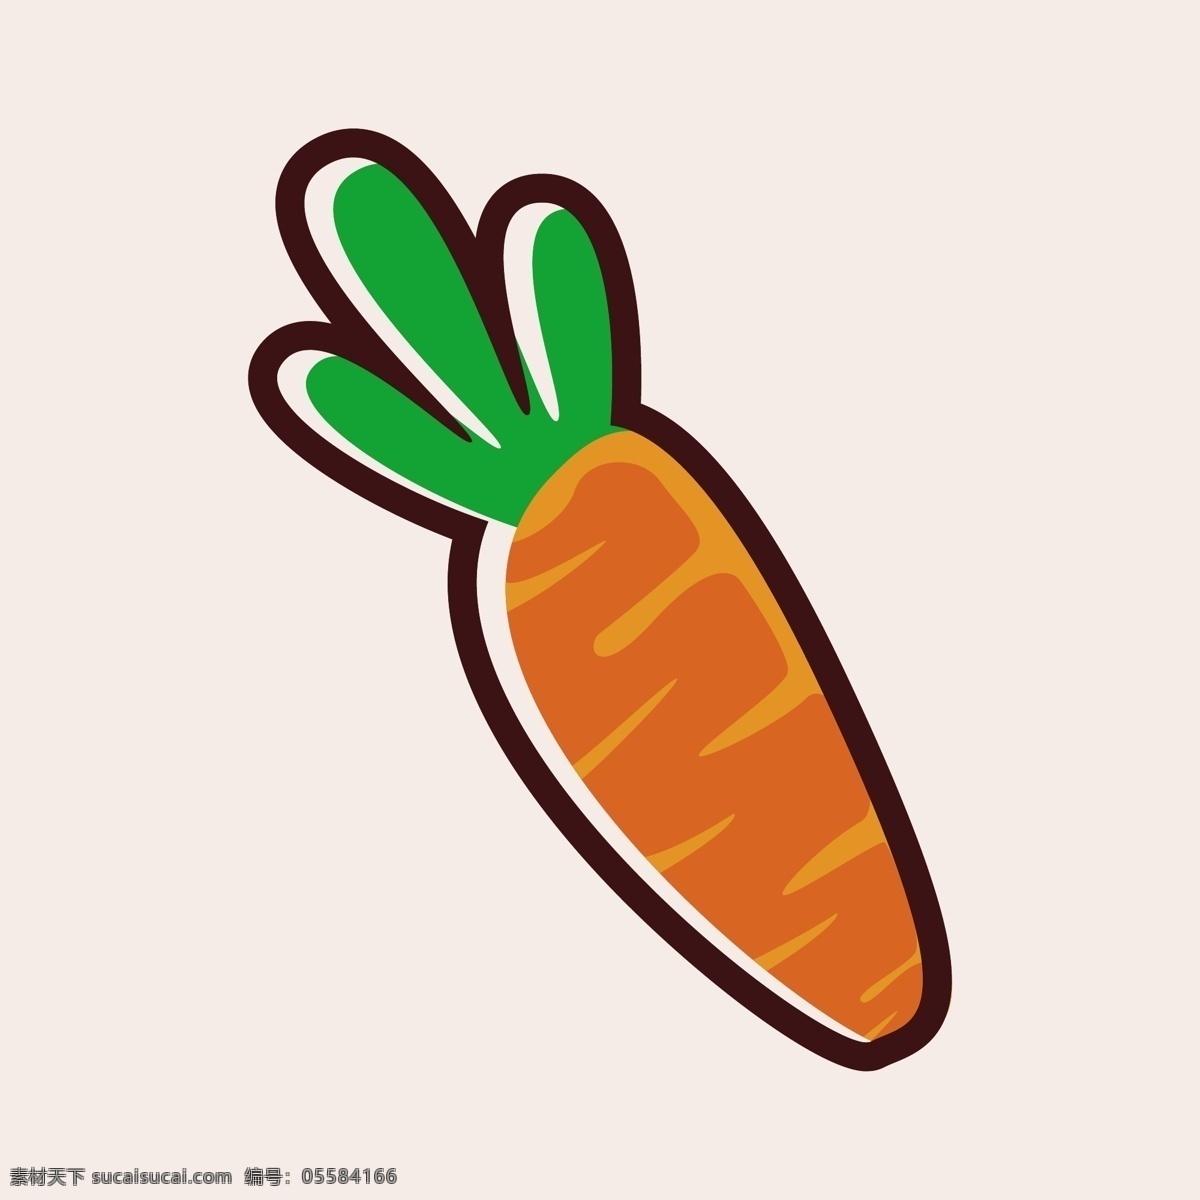 动漫卡通 插画 儿童绘本 儿童画画 矢量图 卡通漫画 食物简笔画 平面设计 食物图 标 美食 美味 食物漫画 卡通食物 卡通蔬菜 蔬菜水果 卡通西蓝花 卡通胡萝卜 卡通萝卜 卡通设计